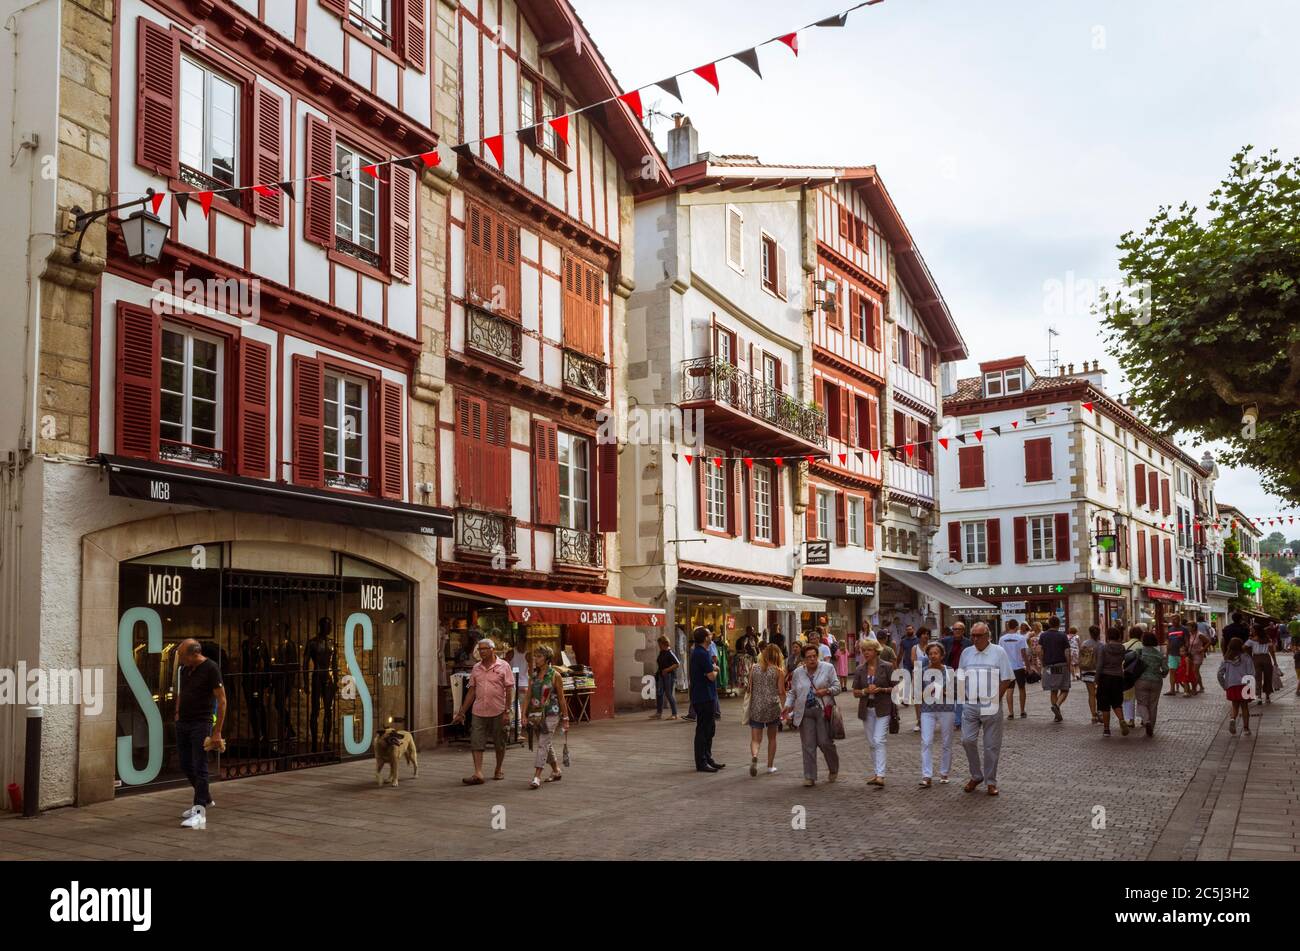 Saint Jean de Luz, Pays basque français, France - 13 juillet 2019 : Les Gens marchent devant des bâtiments traditionnels dans le centre historique de Saint Jean de lu Banque D'Images